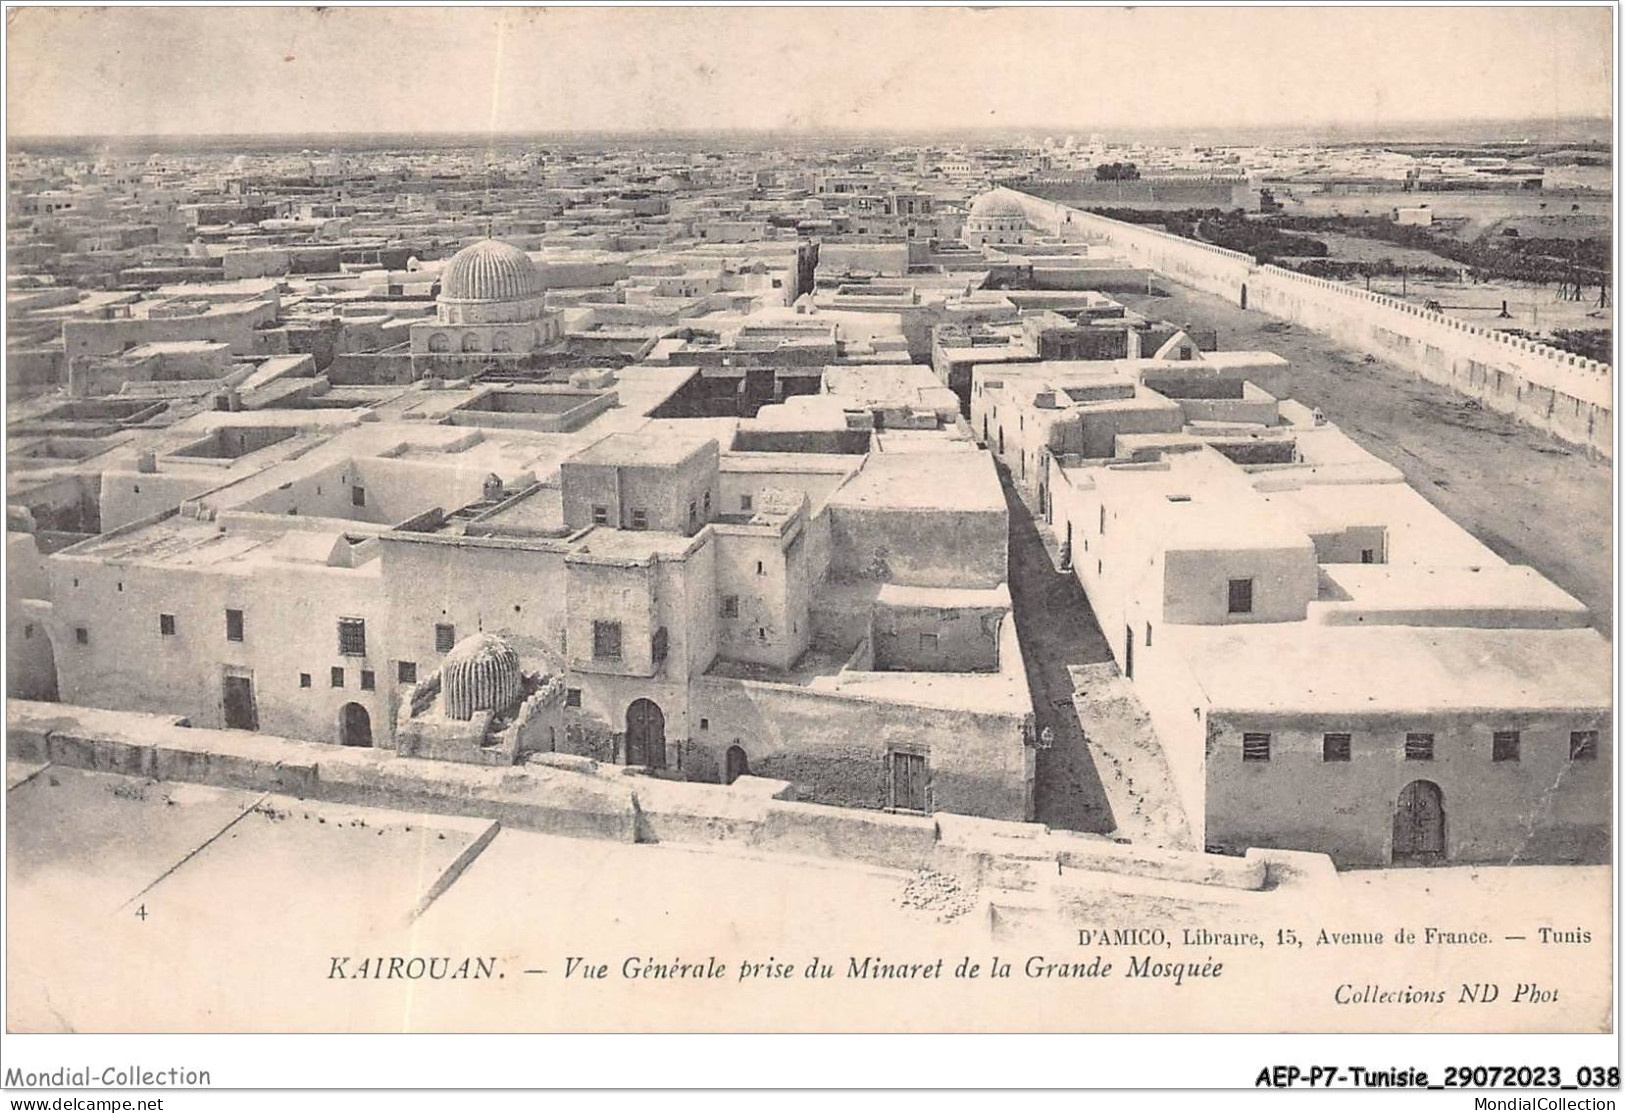 AEPP7-TUNISIE-0585 - KAIROUAN - VUE GENERALE PRISE DU MINARET DE LA GRANDE MOSQUEE - Tunisia